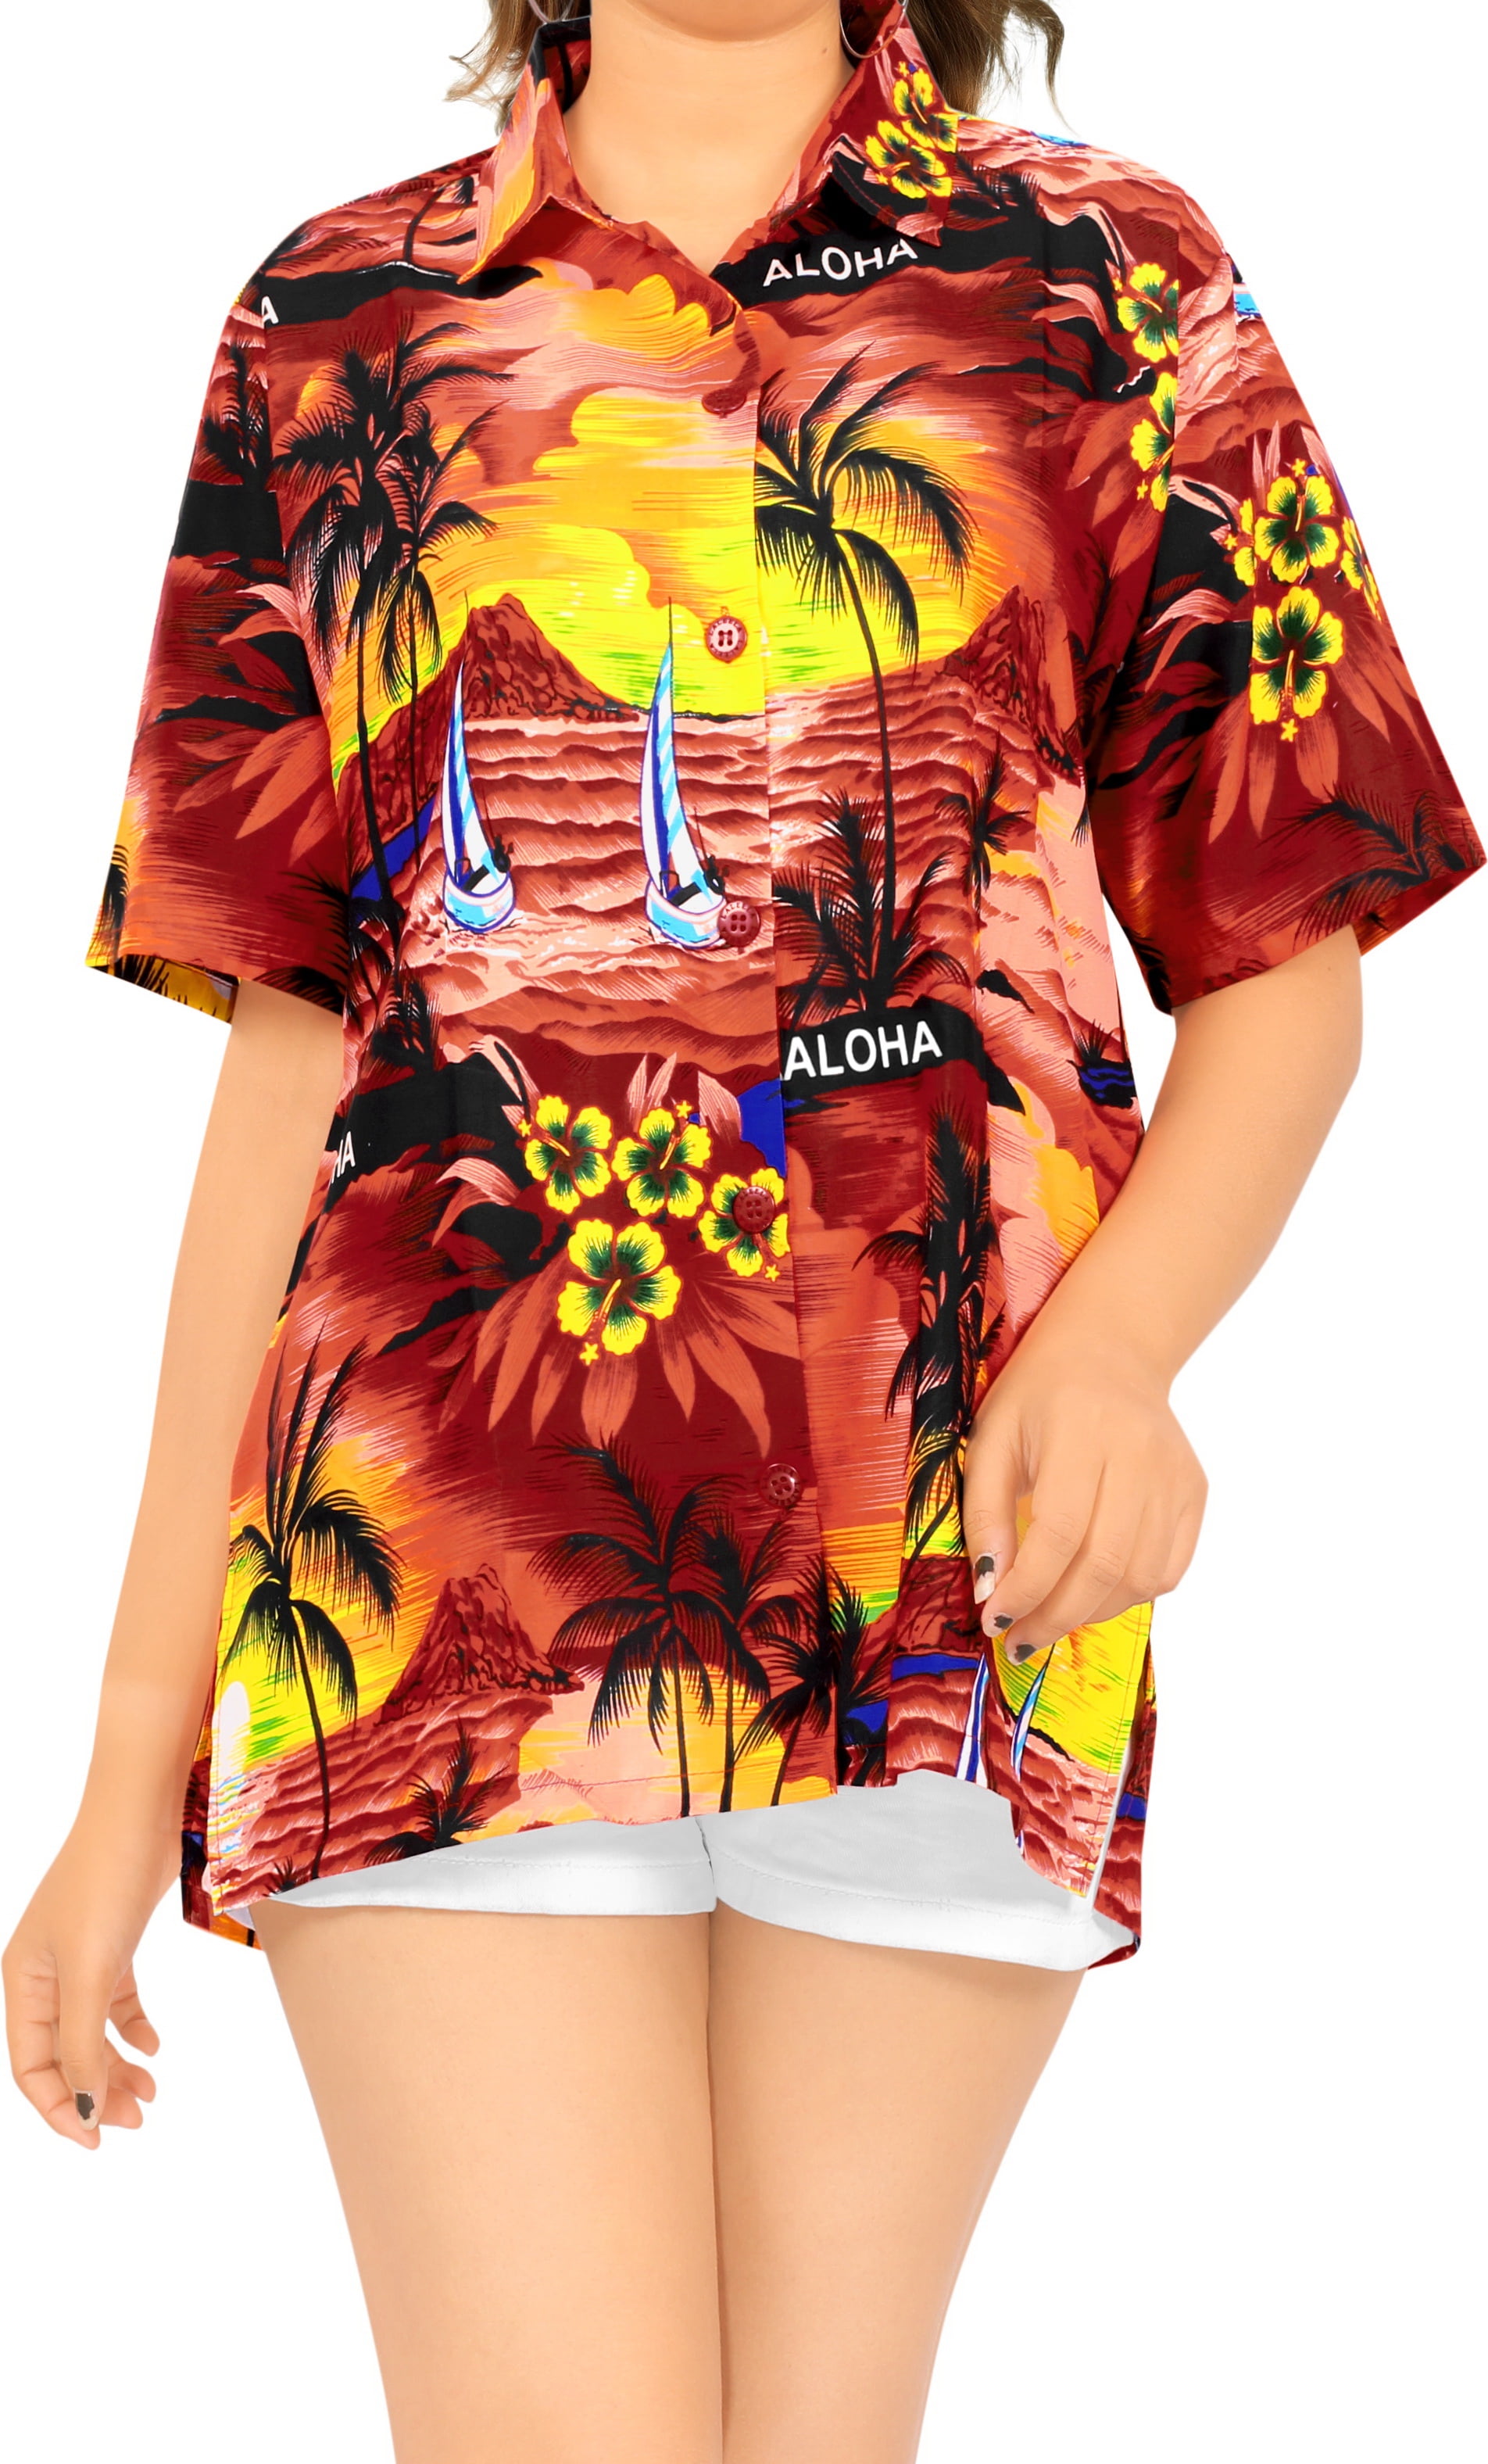 HAPPY BAY Women's Hawaiian Blouse Shirt For Girls Button Down Up Shirt M Red_W928 Walmart.com